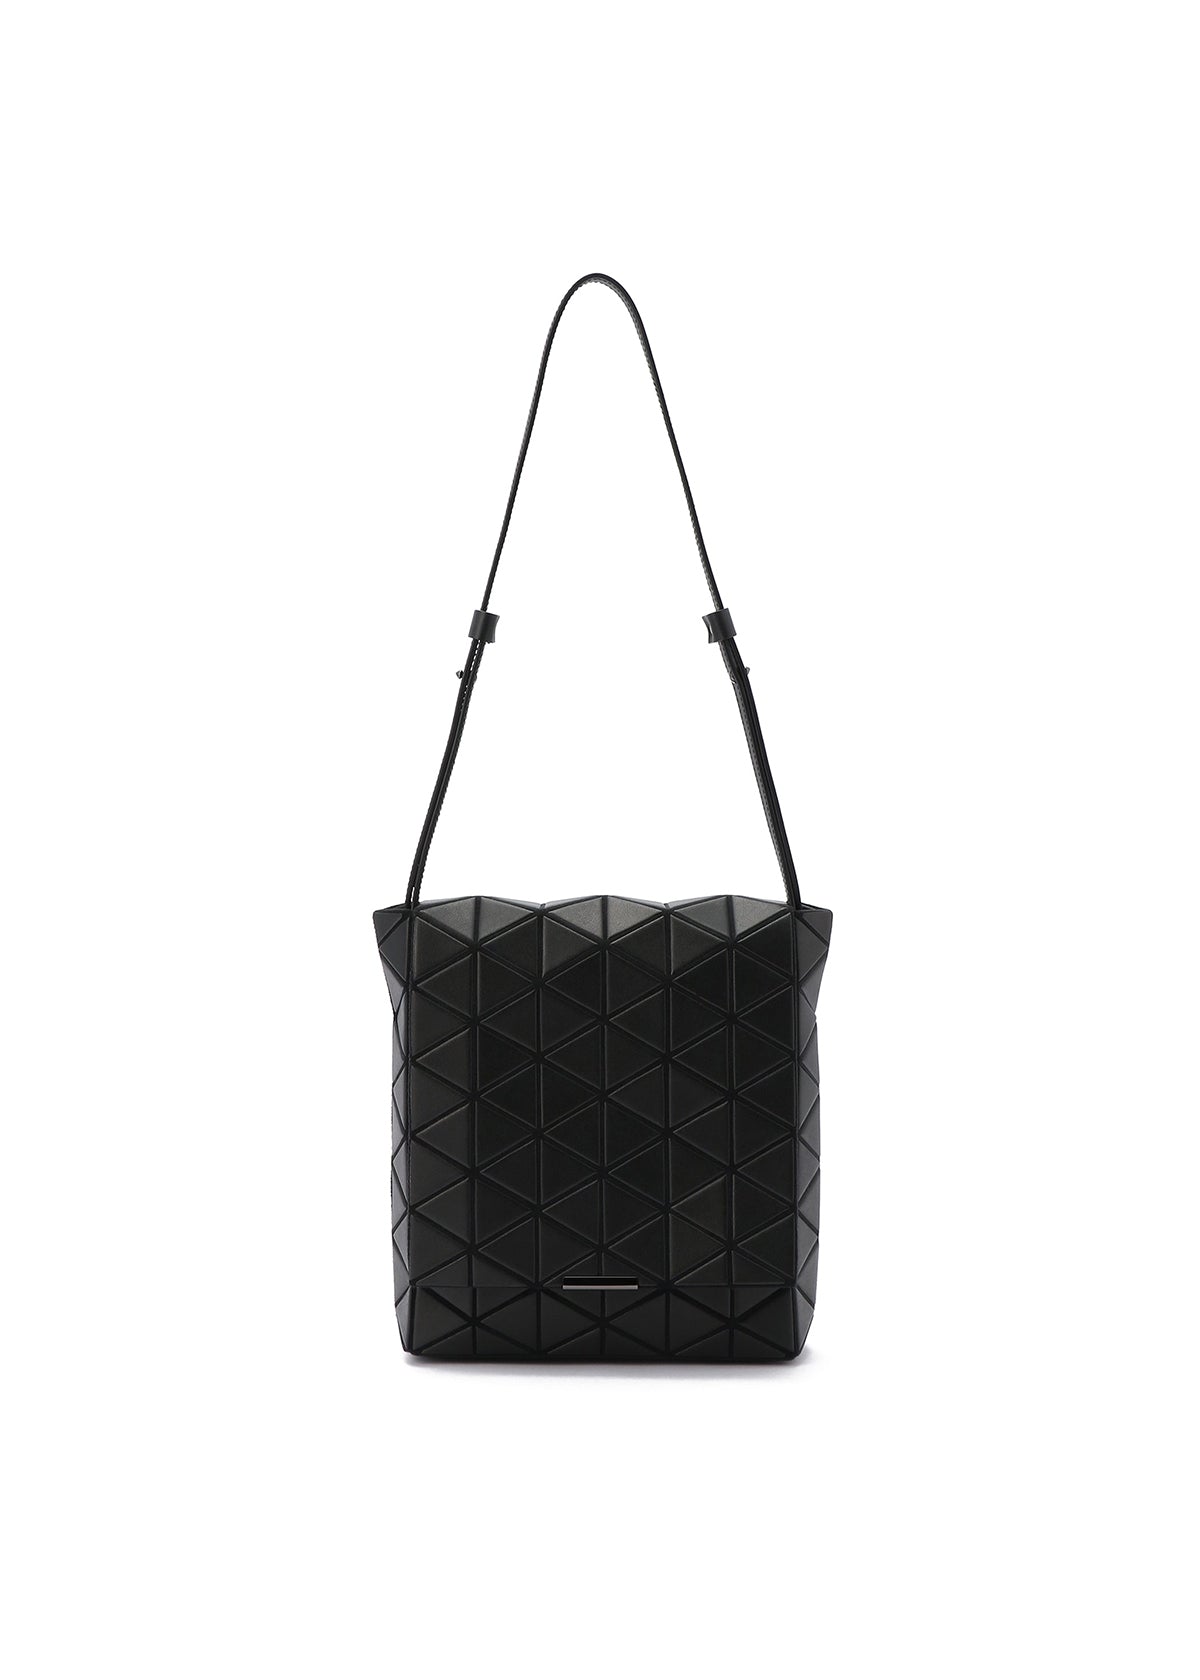 Shoulder bags Bao Bao Issey Miyake - Wring shoulder bag in black -  BB08AG53215